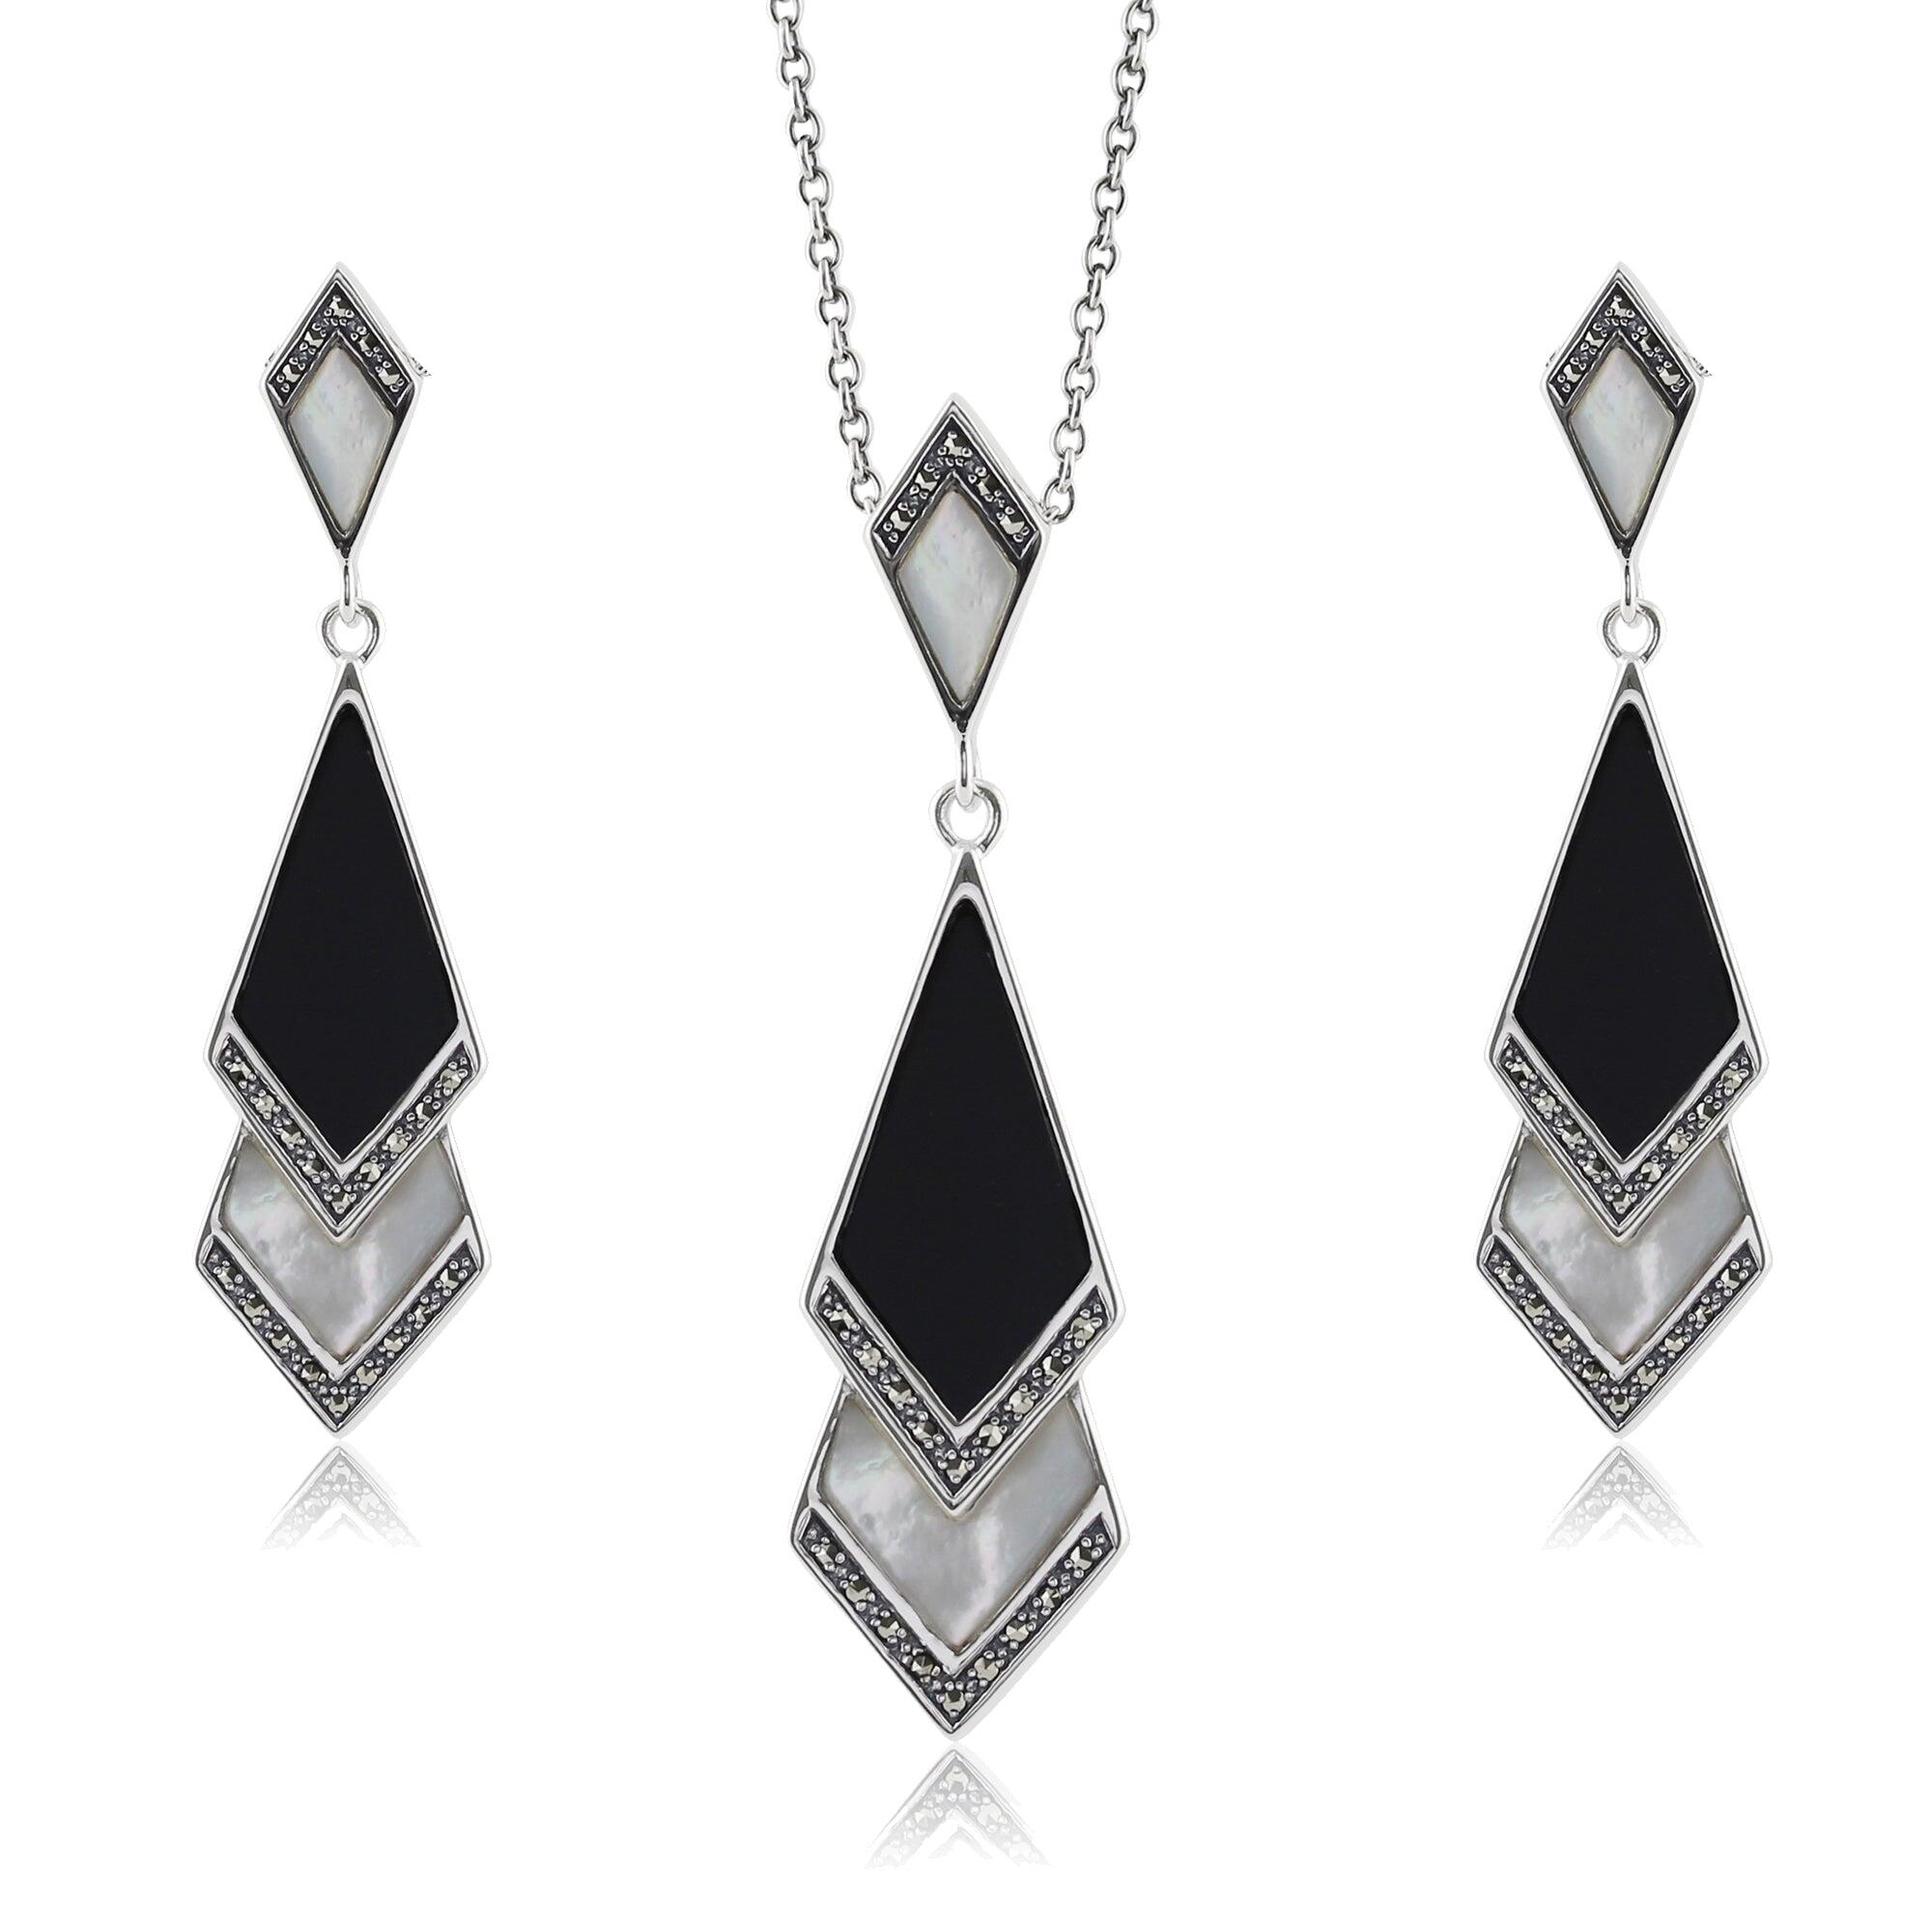 Art Deco Style Style Black Onyx & Mother of Pearl Fan Drop Earrings & Necklace Set in 925 Sterling Silver